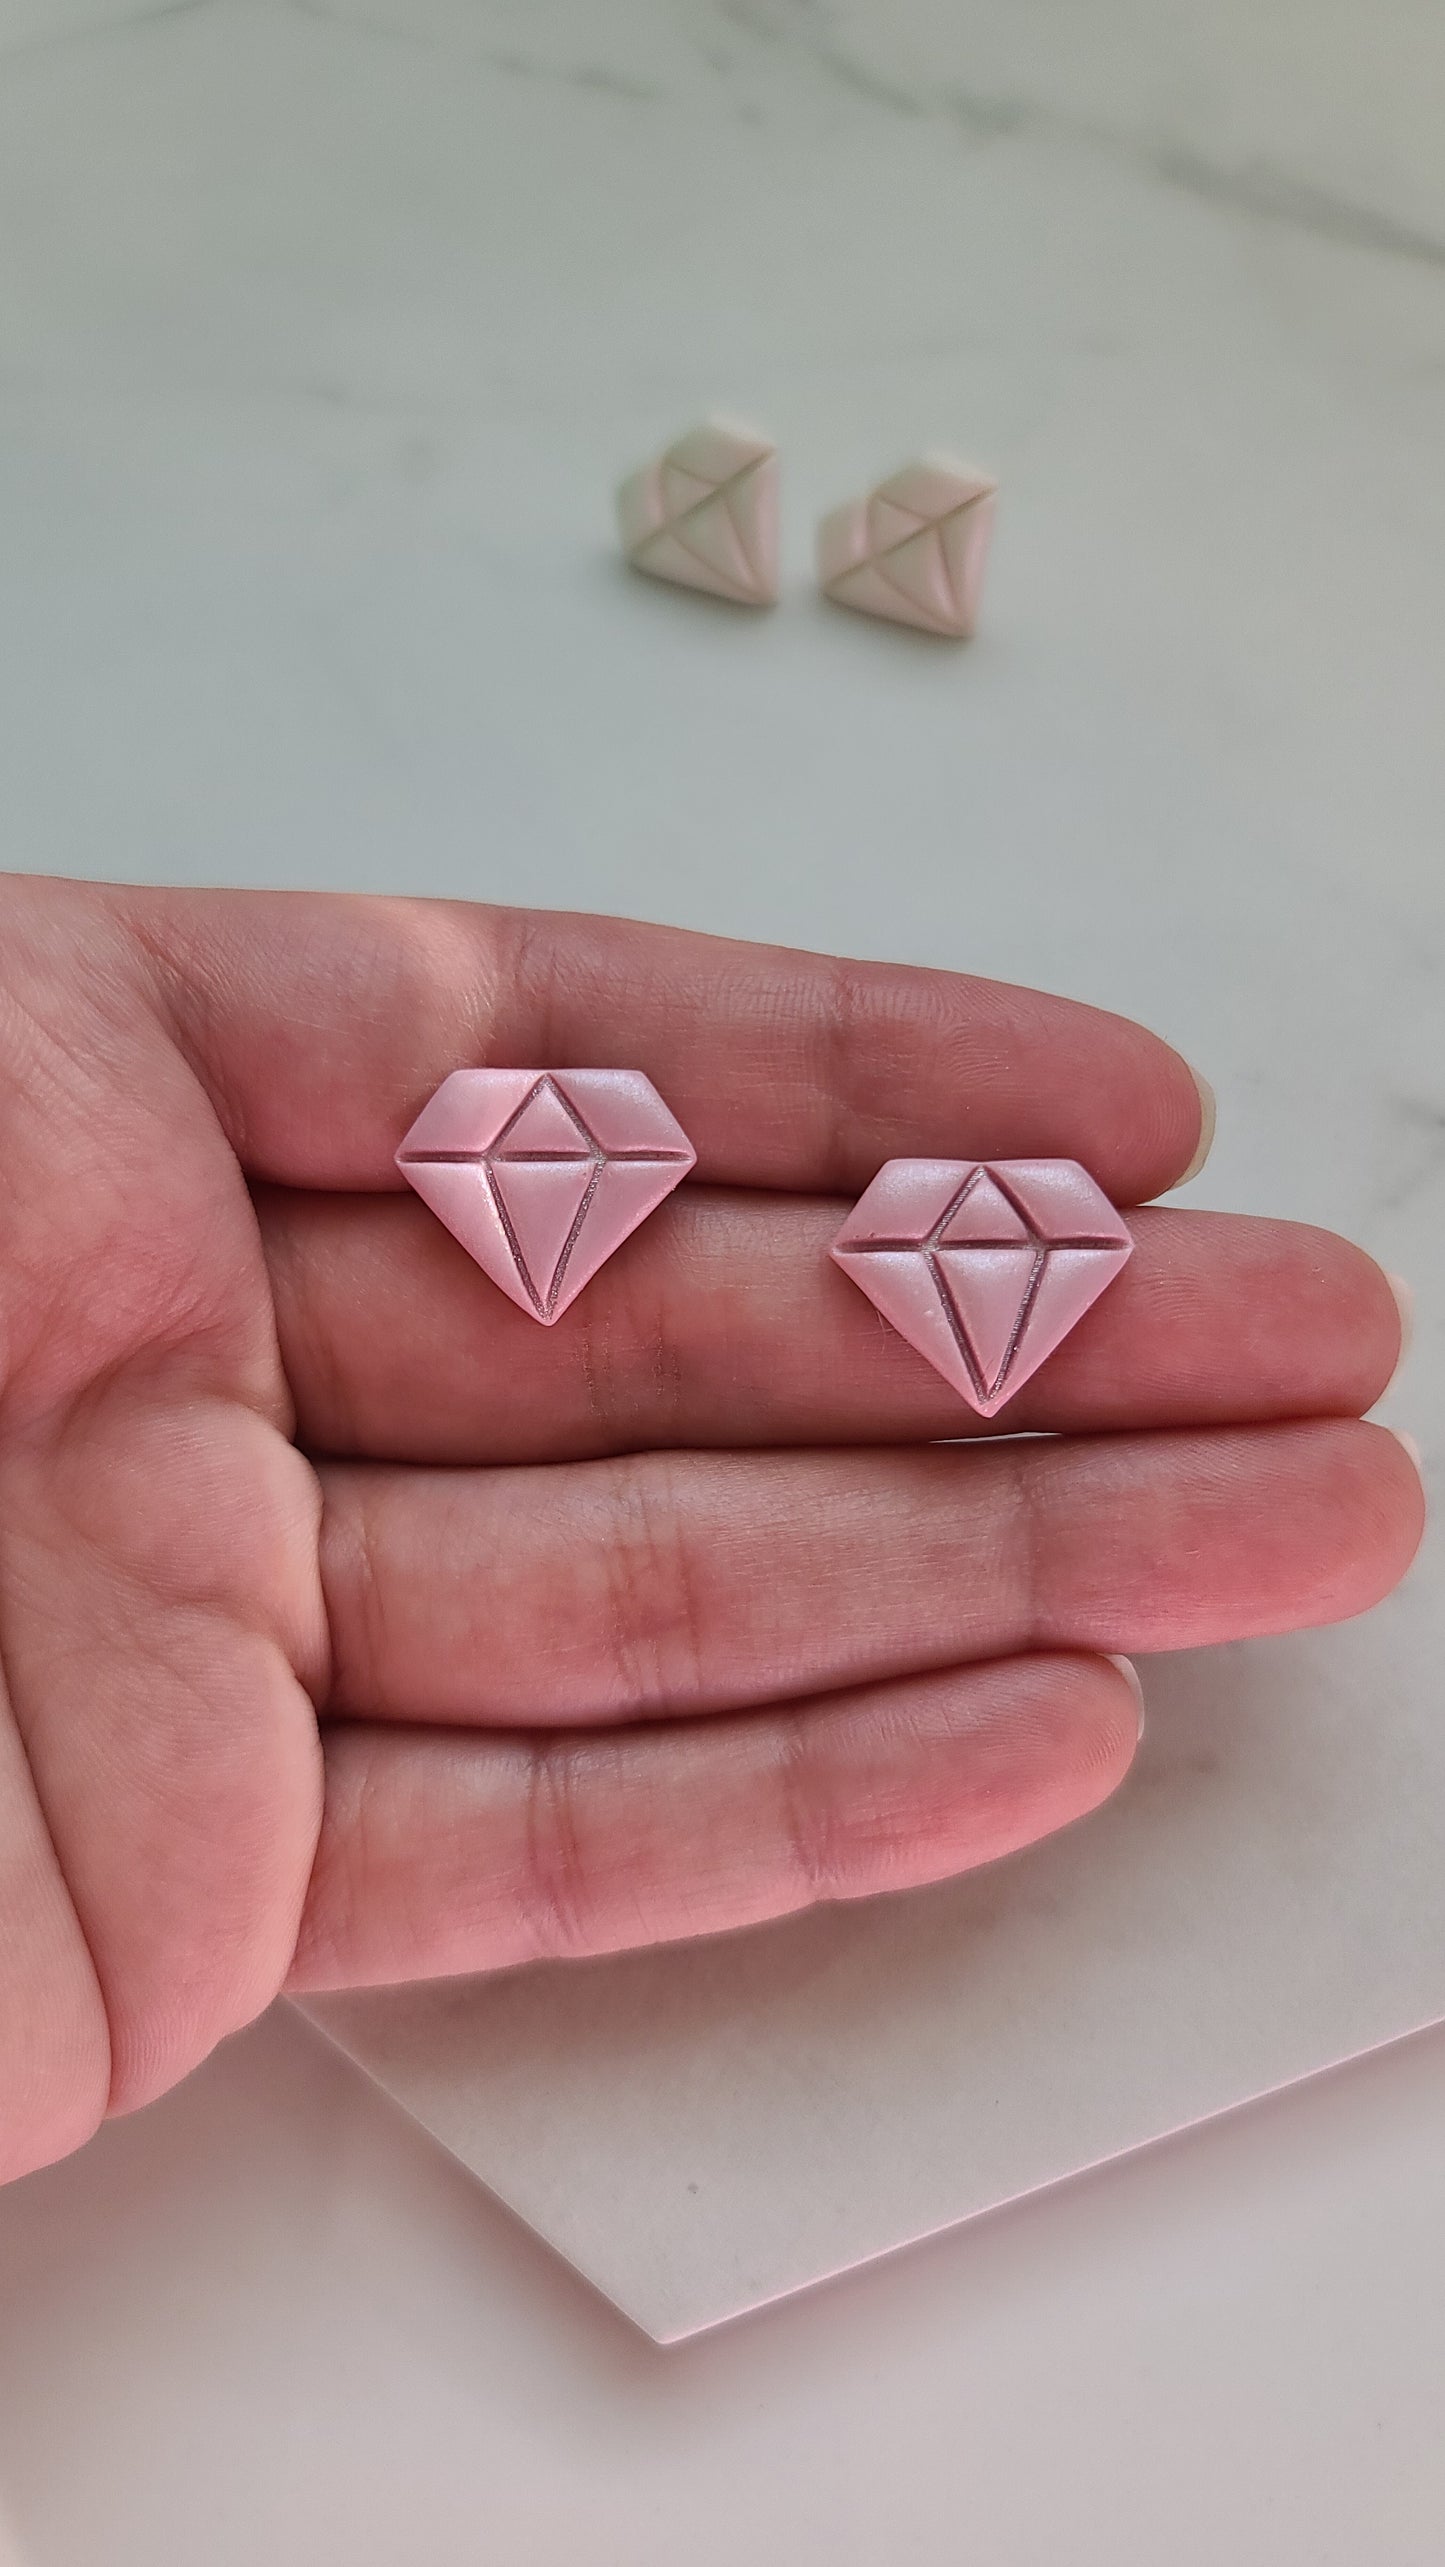 Shimmery diamond shaped Studs earrings